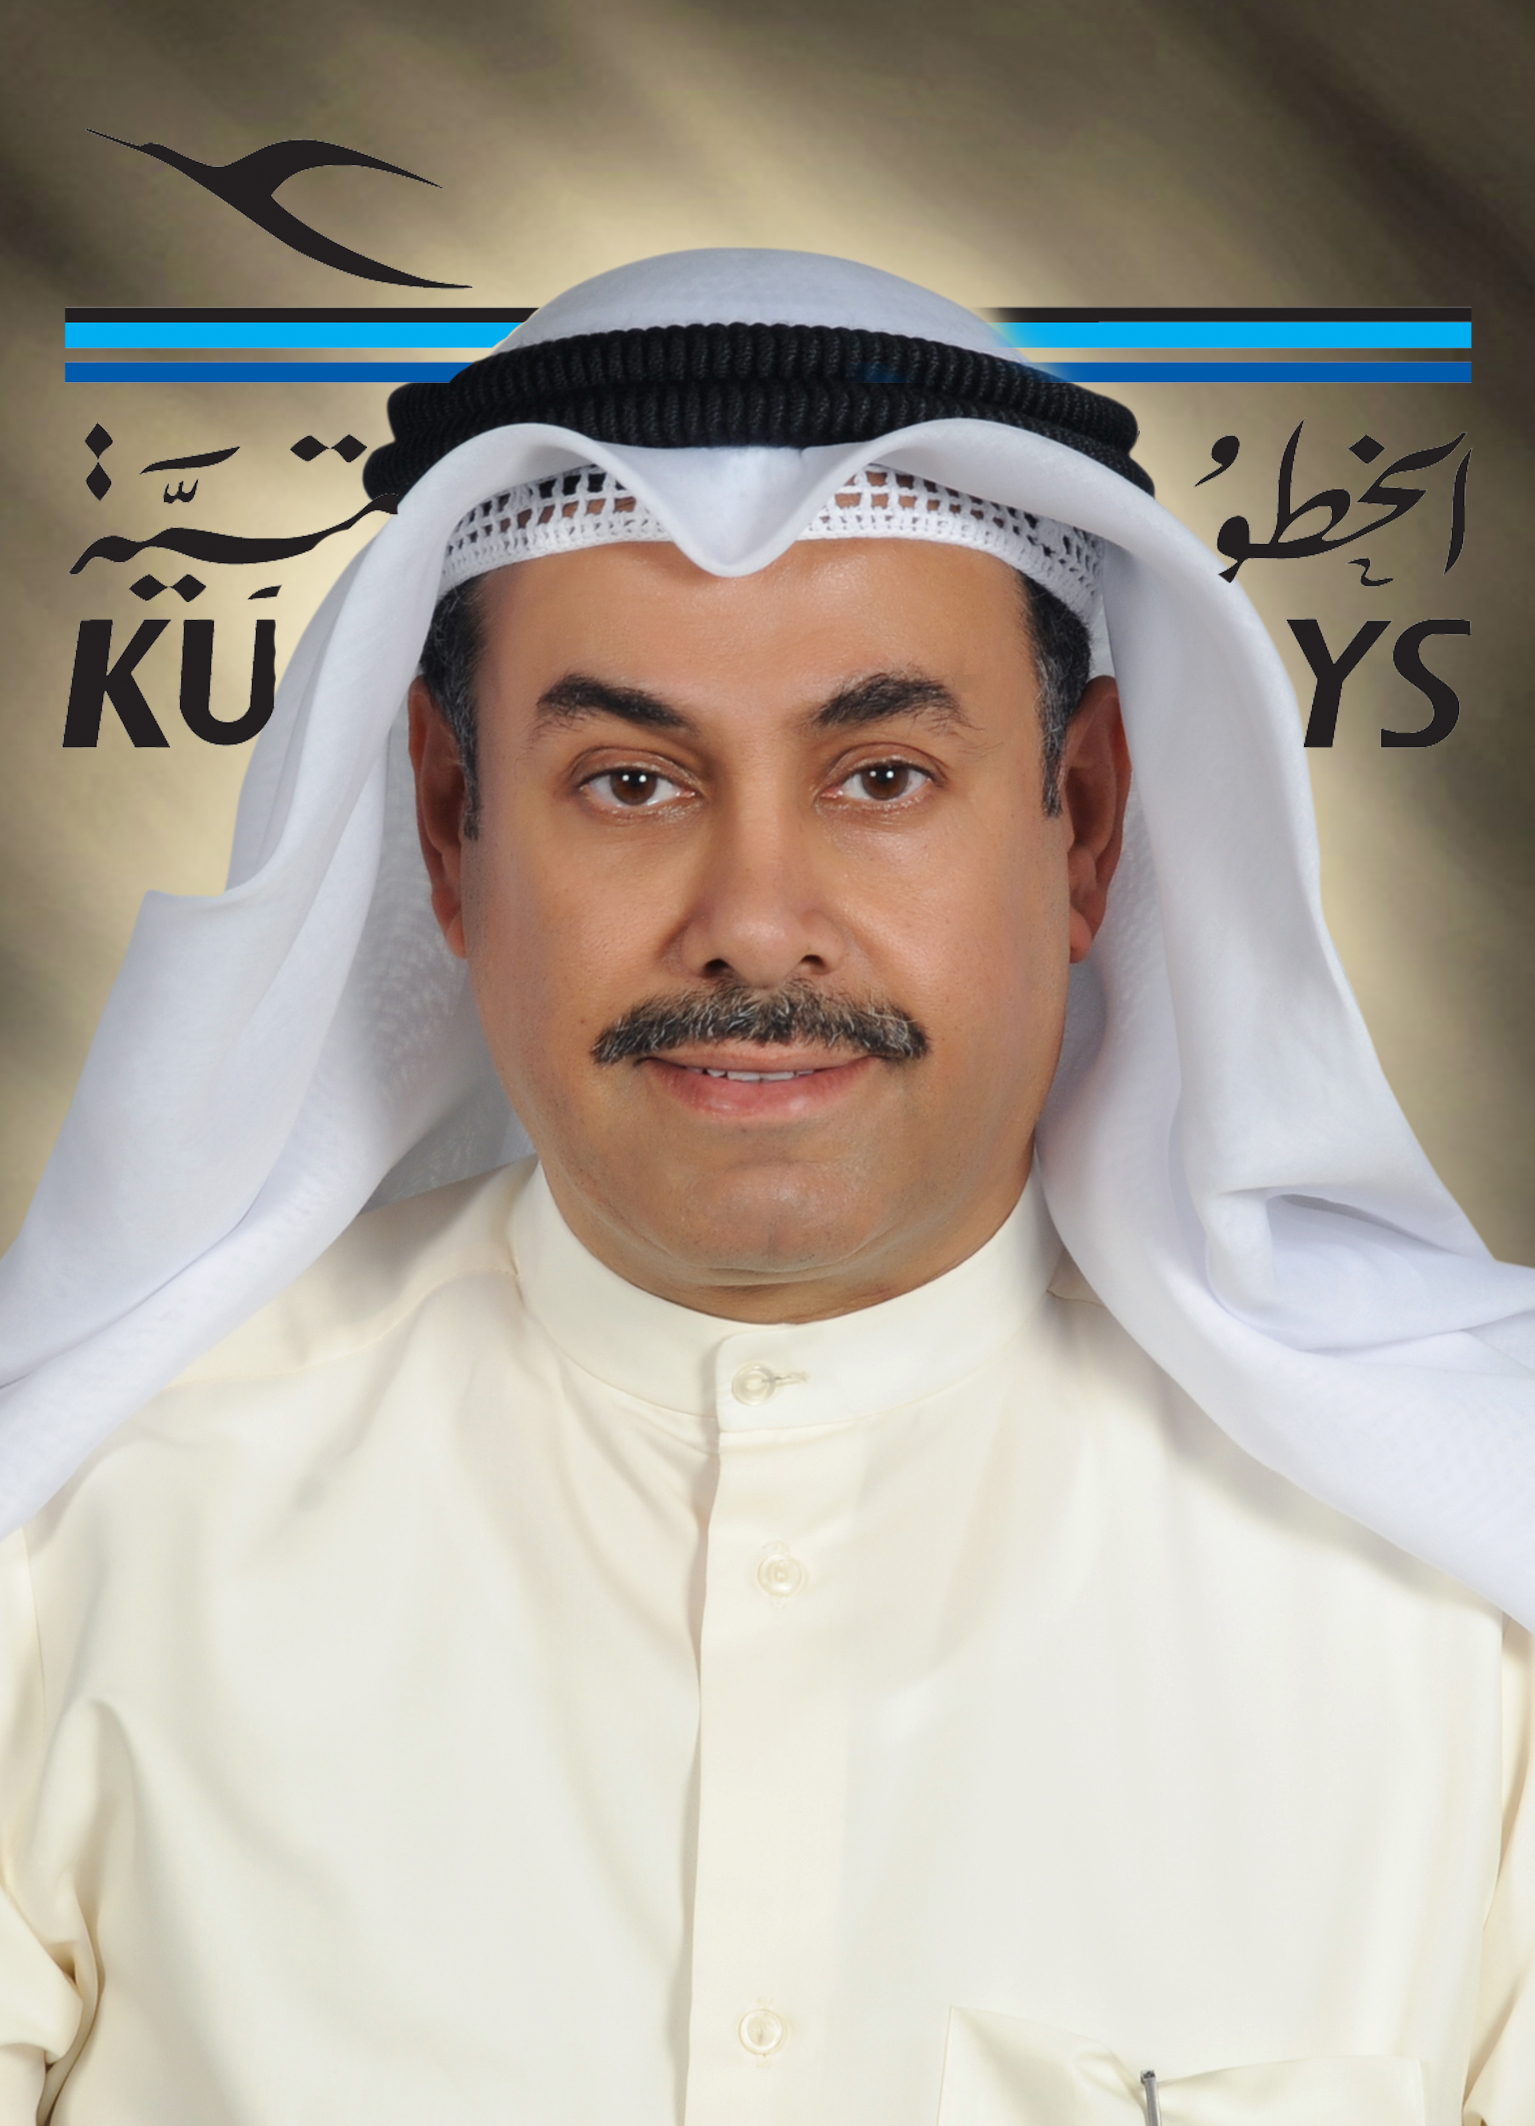 مدير دائرة العلاقات العامة والاعلام في شركة الخطوط الجوية الكويتية خالد الخليفي